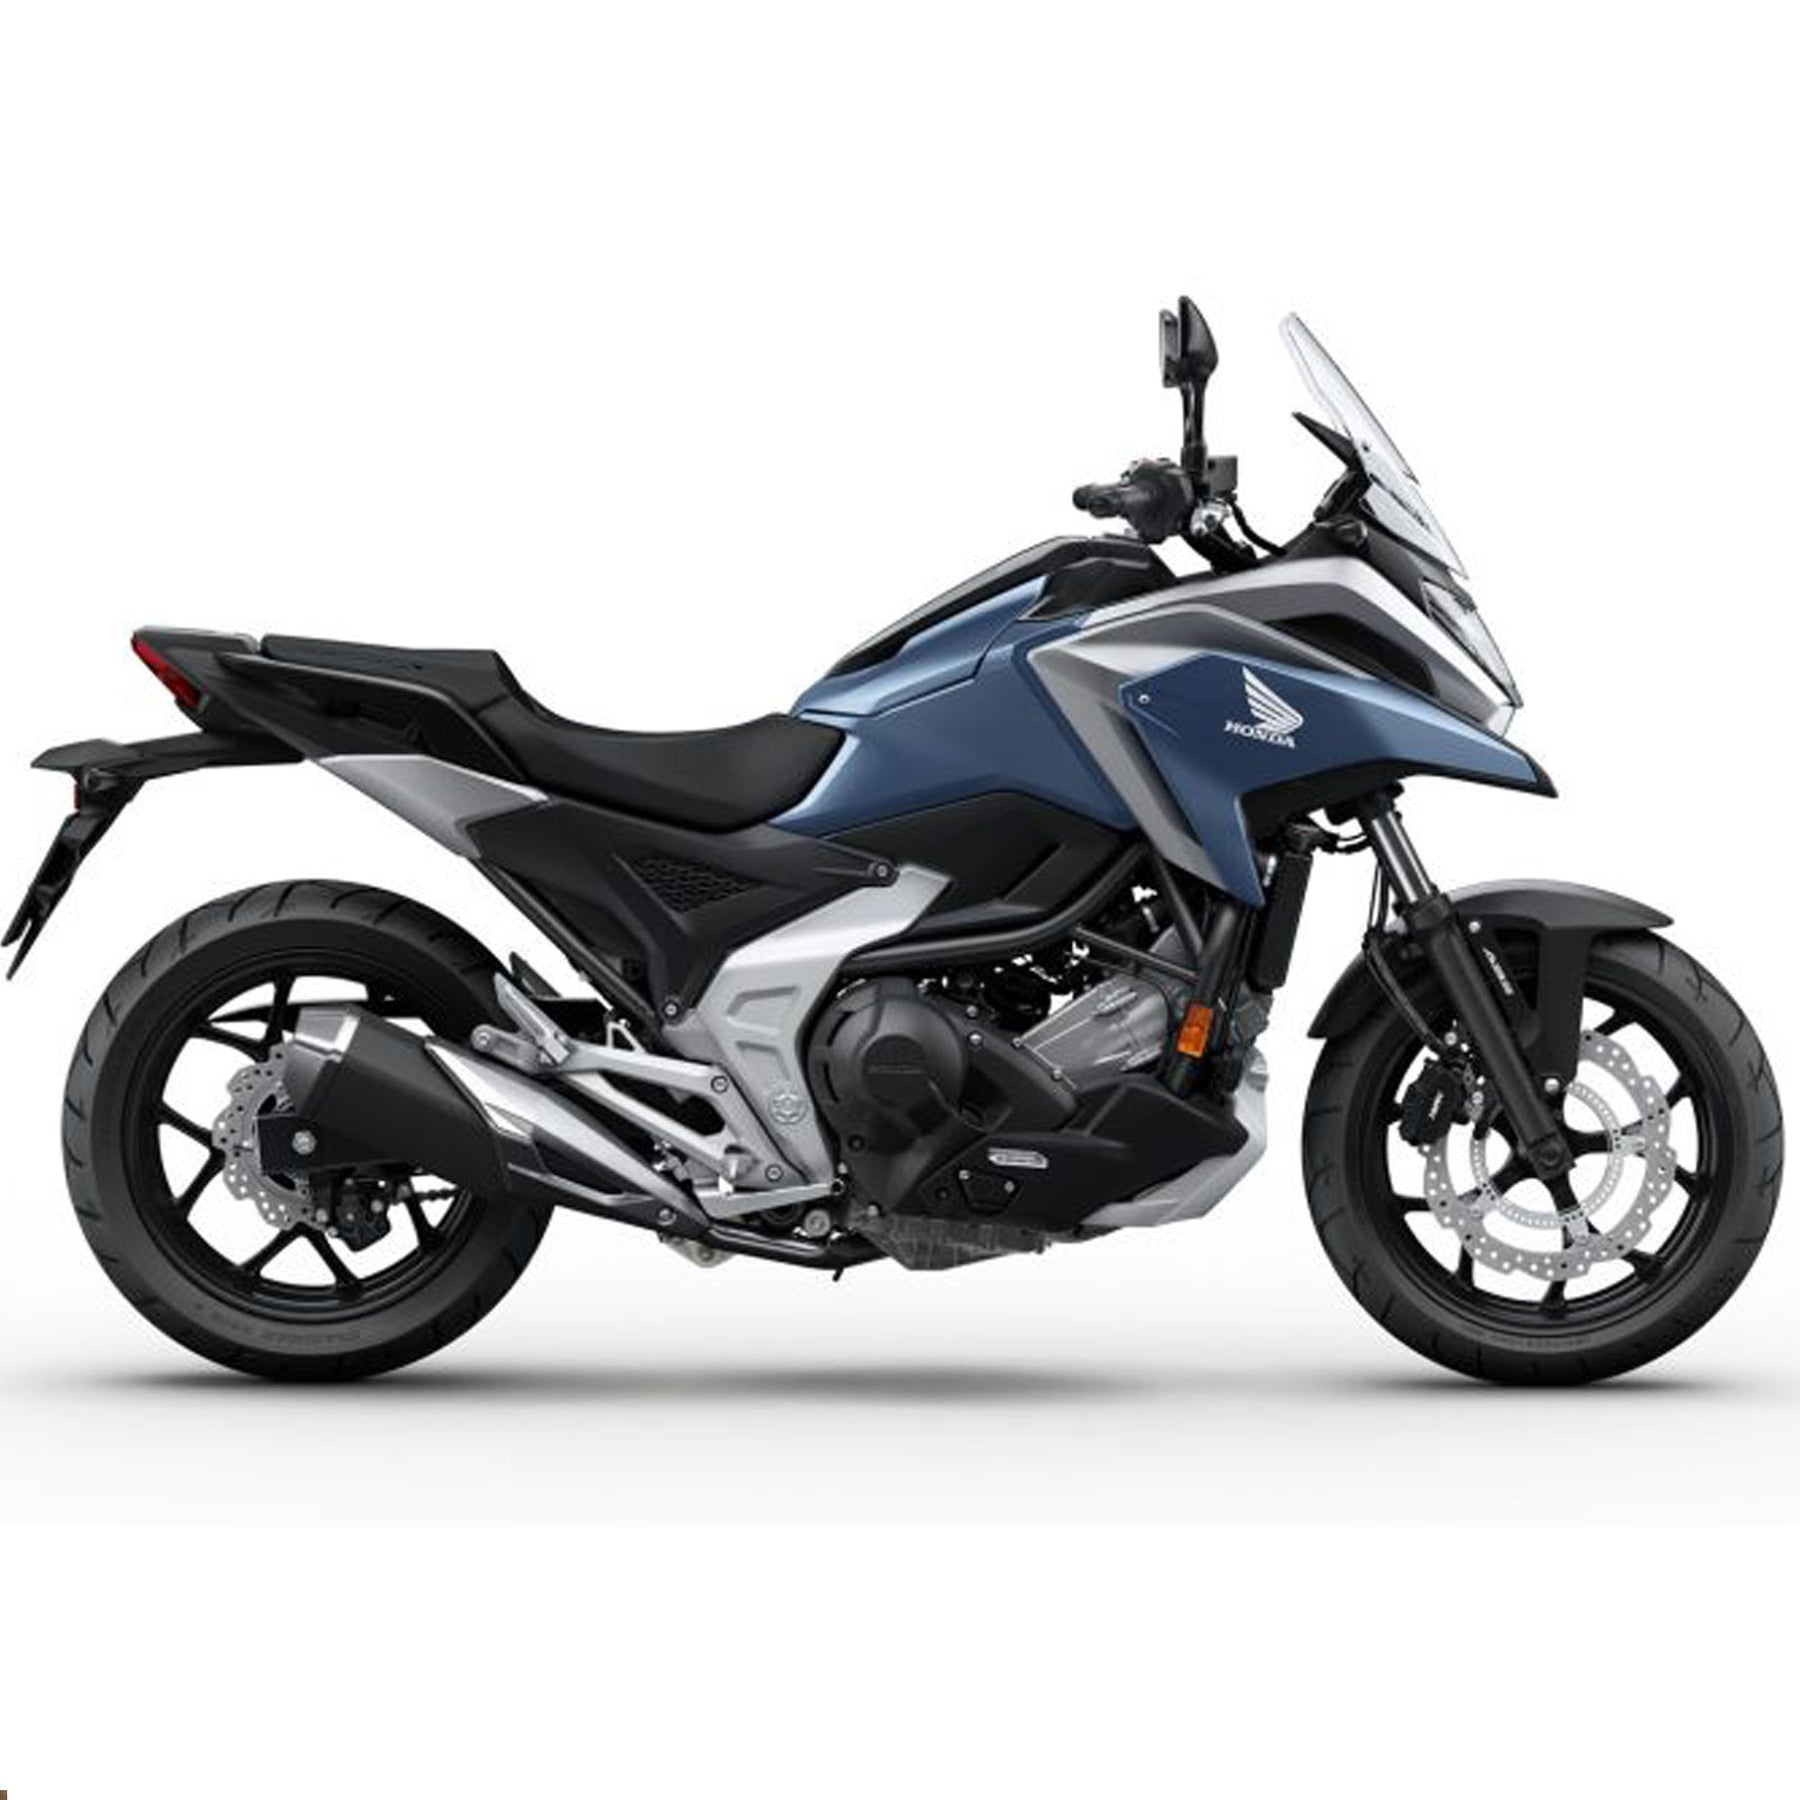 New Honda Bikes | Honda of Bournemouth | NC750X